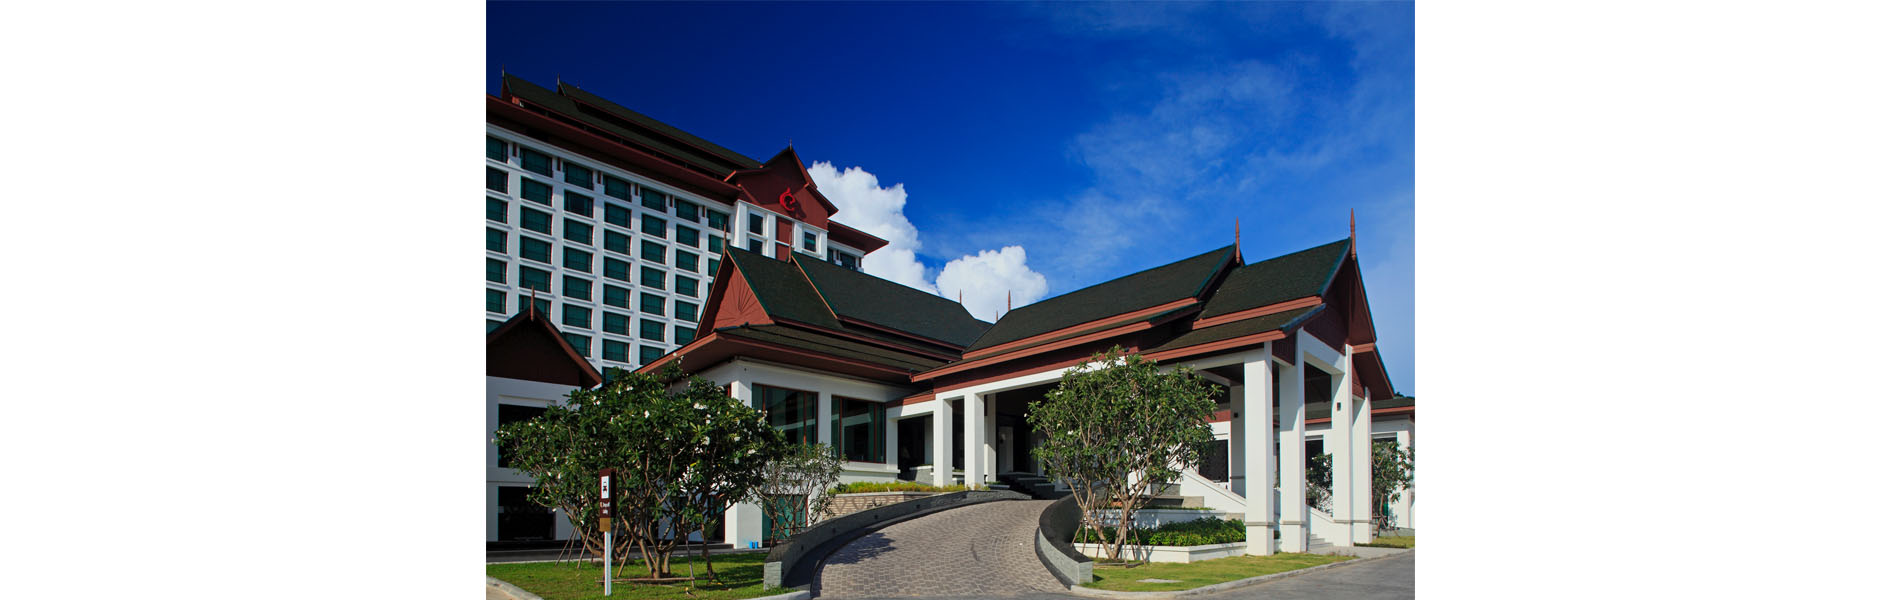 CENTARA HOTEL AND CONVENTION CENTRE KHON KAEN